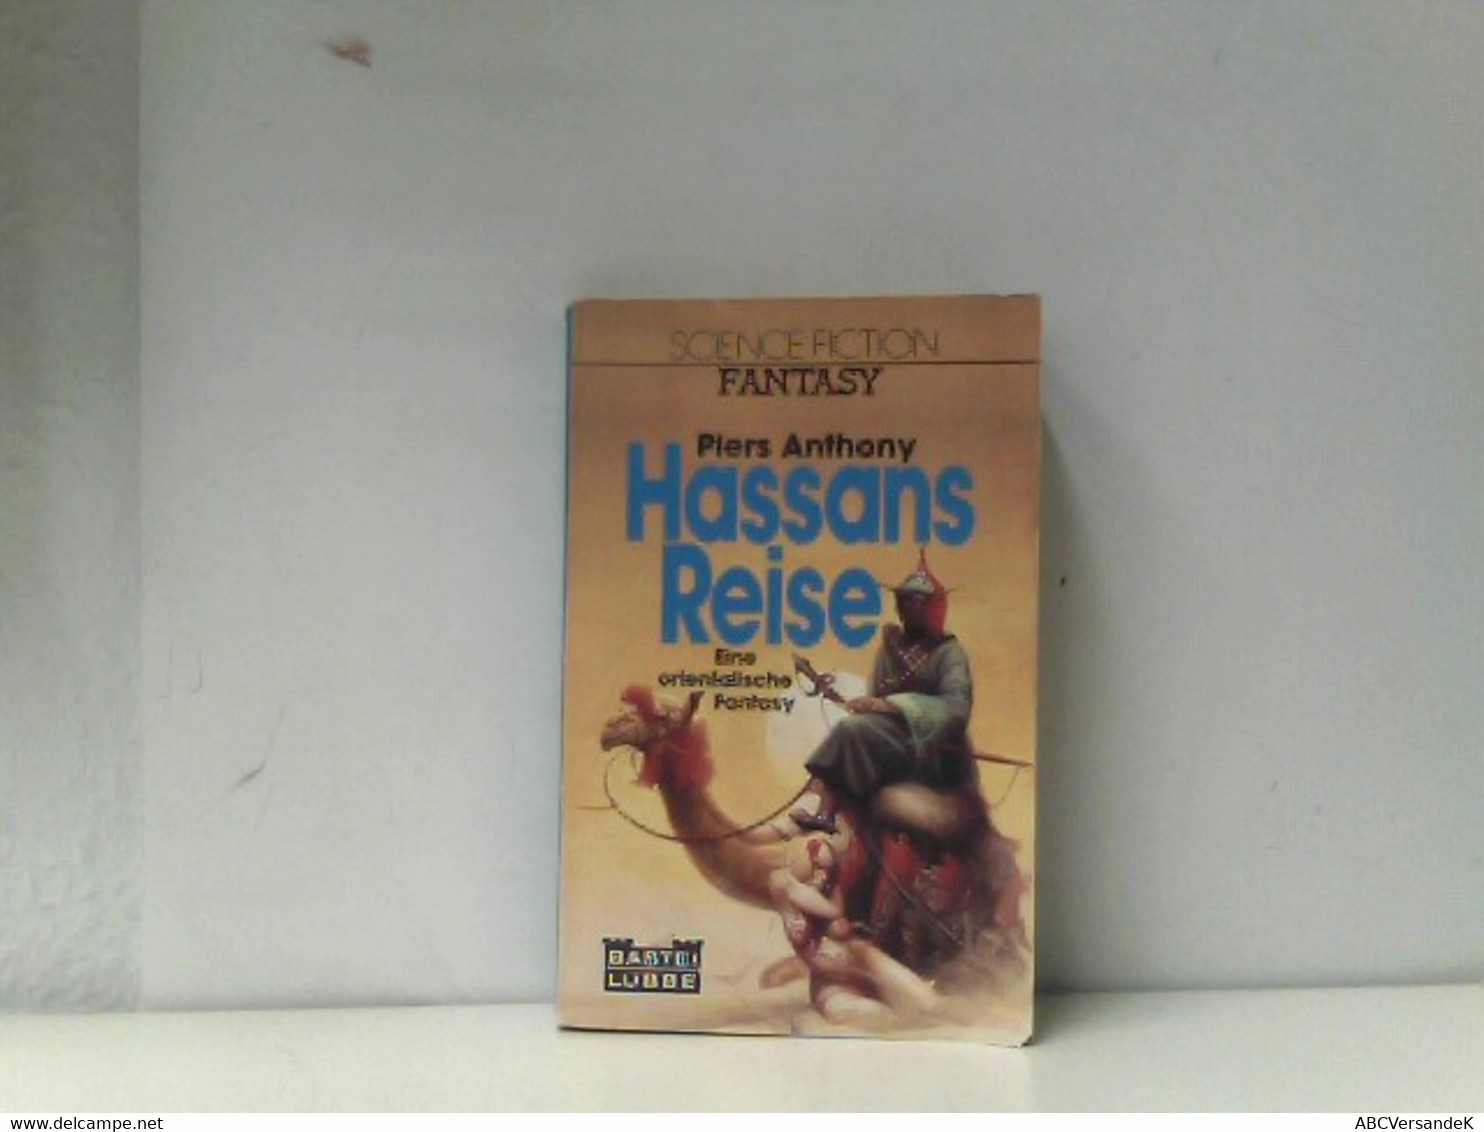 Hassans Reise ; Fantasy-Roman / [Eine Orientalische Fantasy] - Sci-Fi